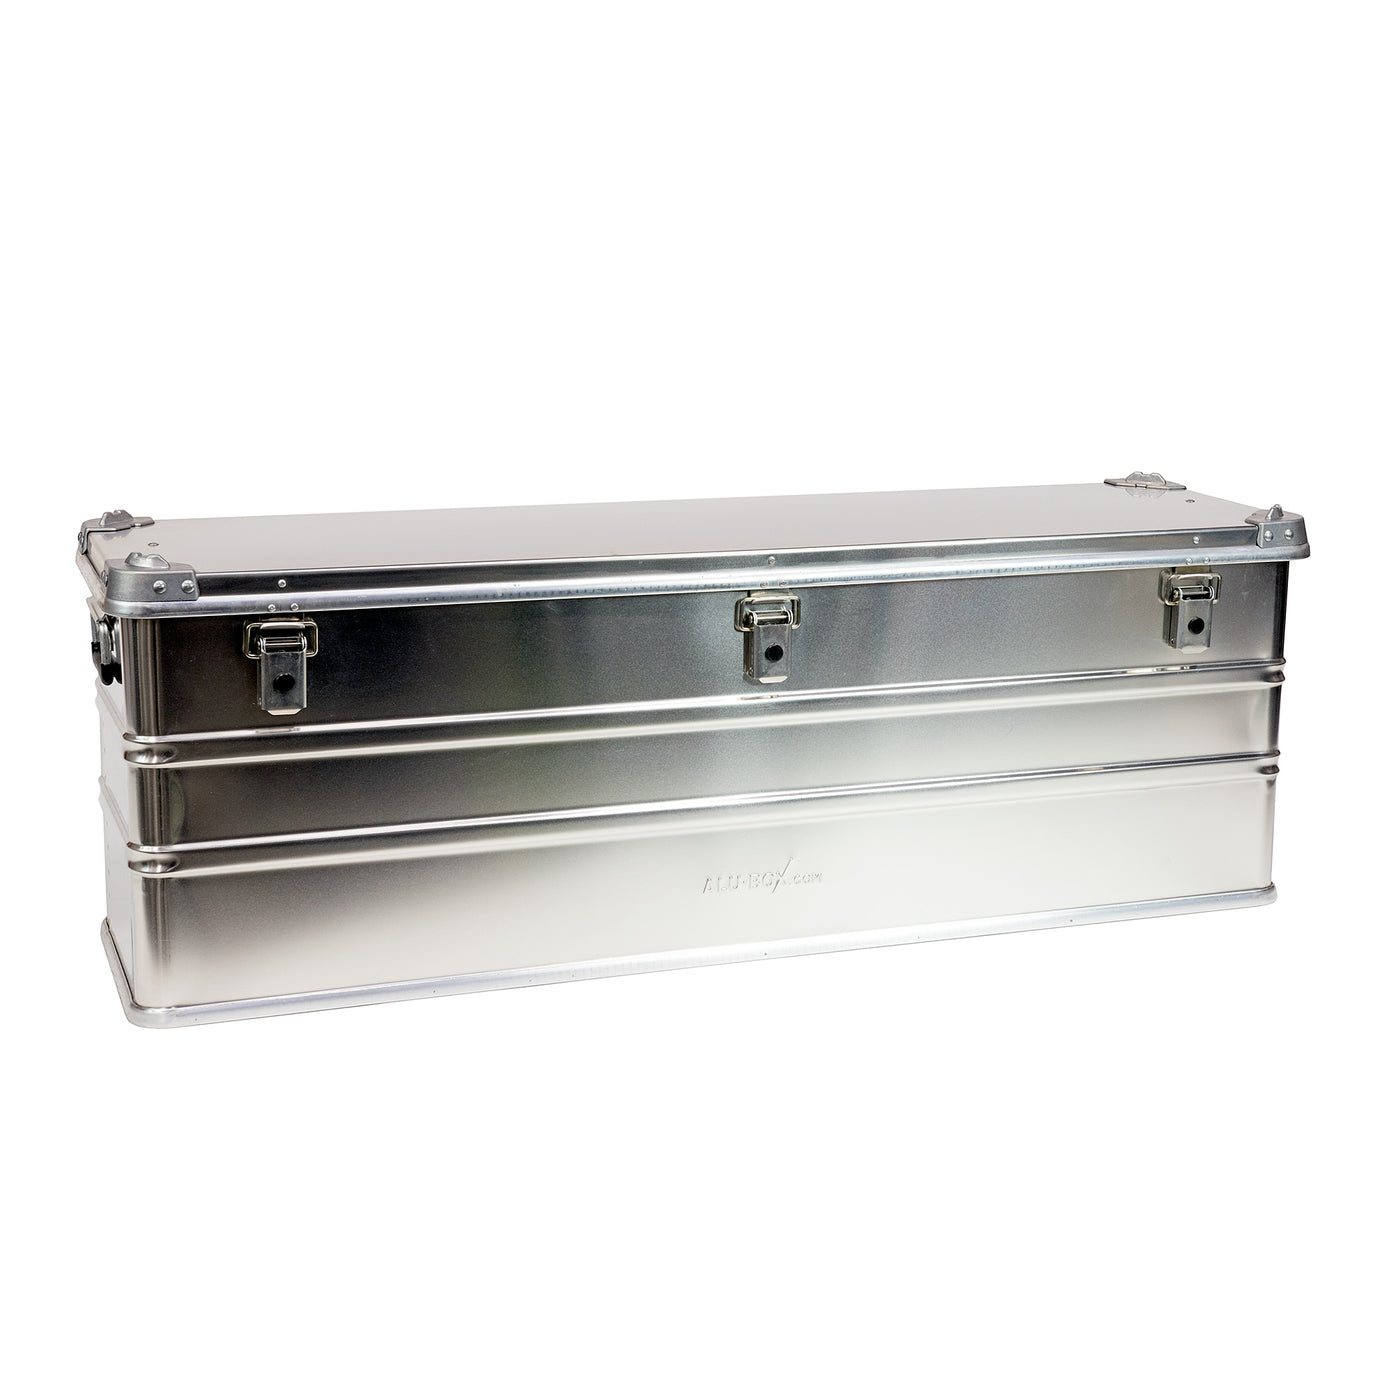 Alubox Aluminum Storage Case